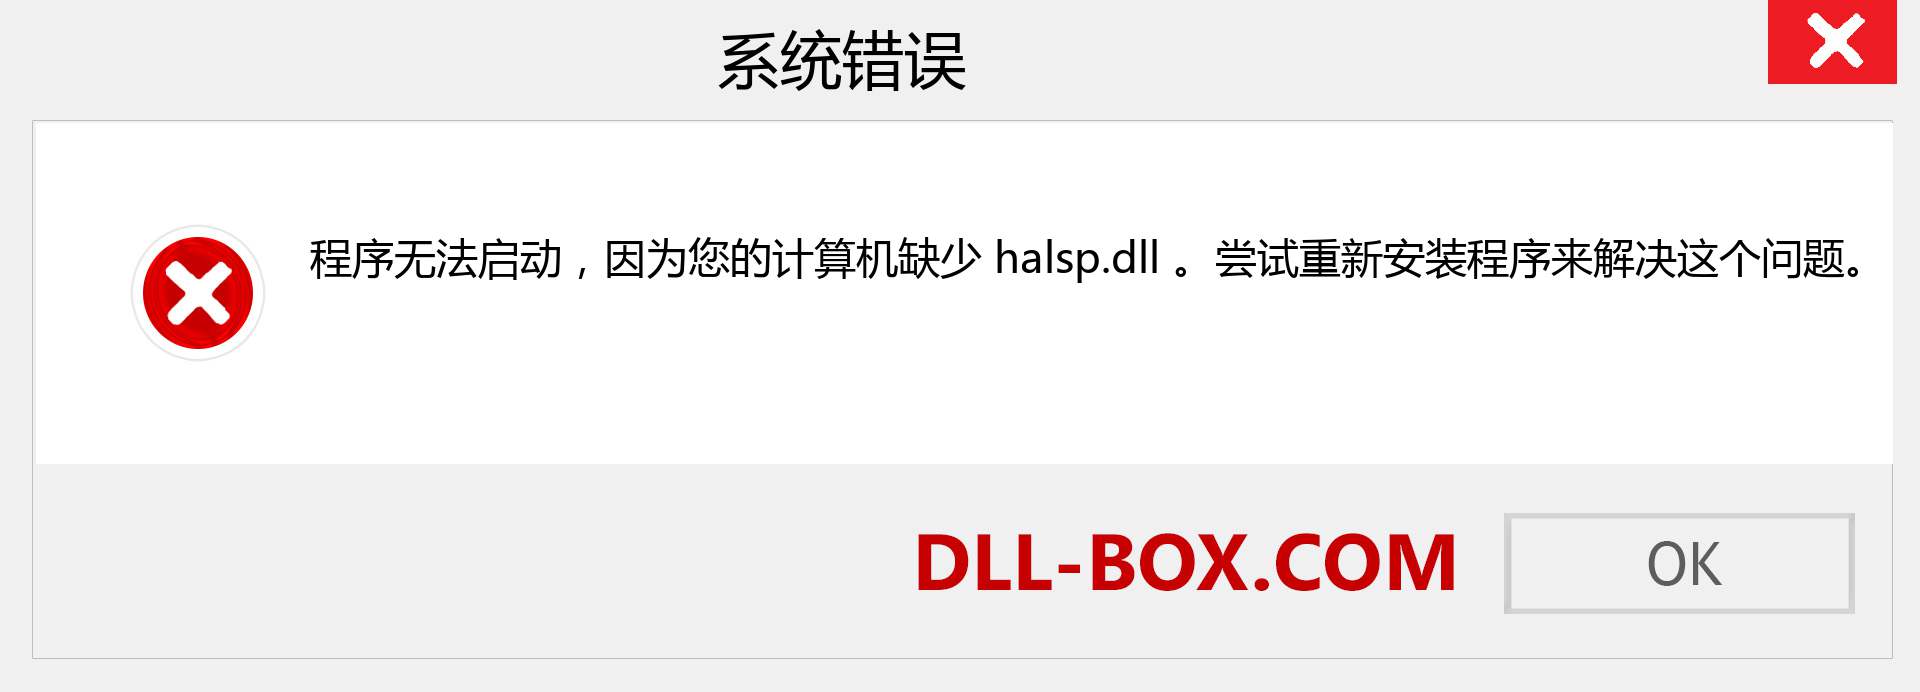 halsp.dll 文件丢失？。 适用于 Windows 7、8、10 的下载 - 修复 Windows、照片、图像上的 halsp dll 丢失错误